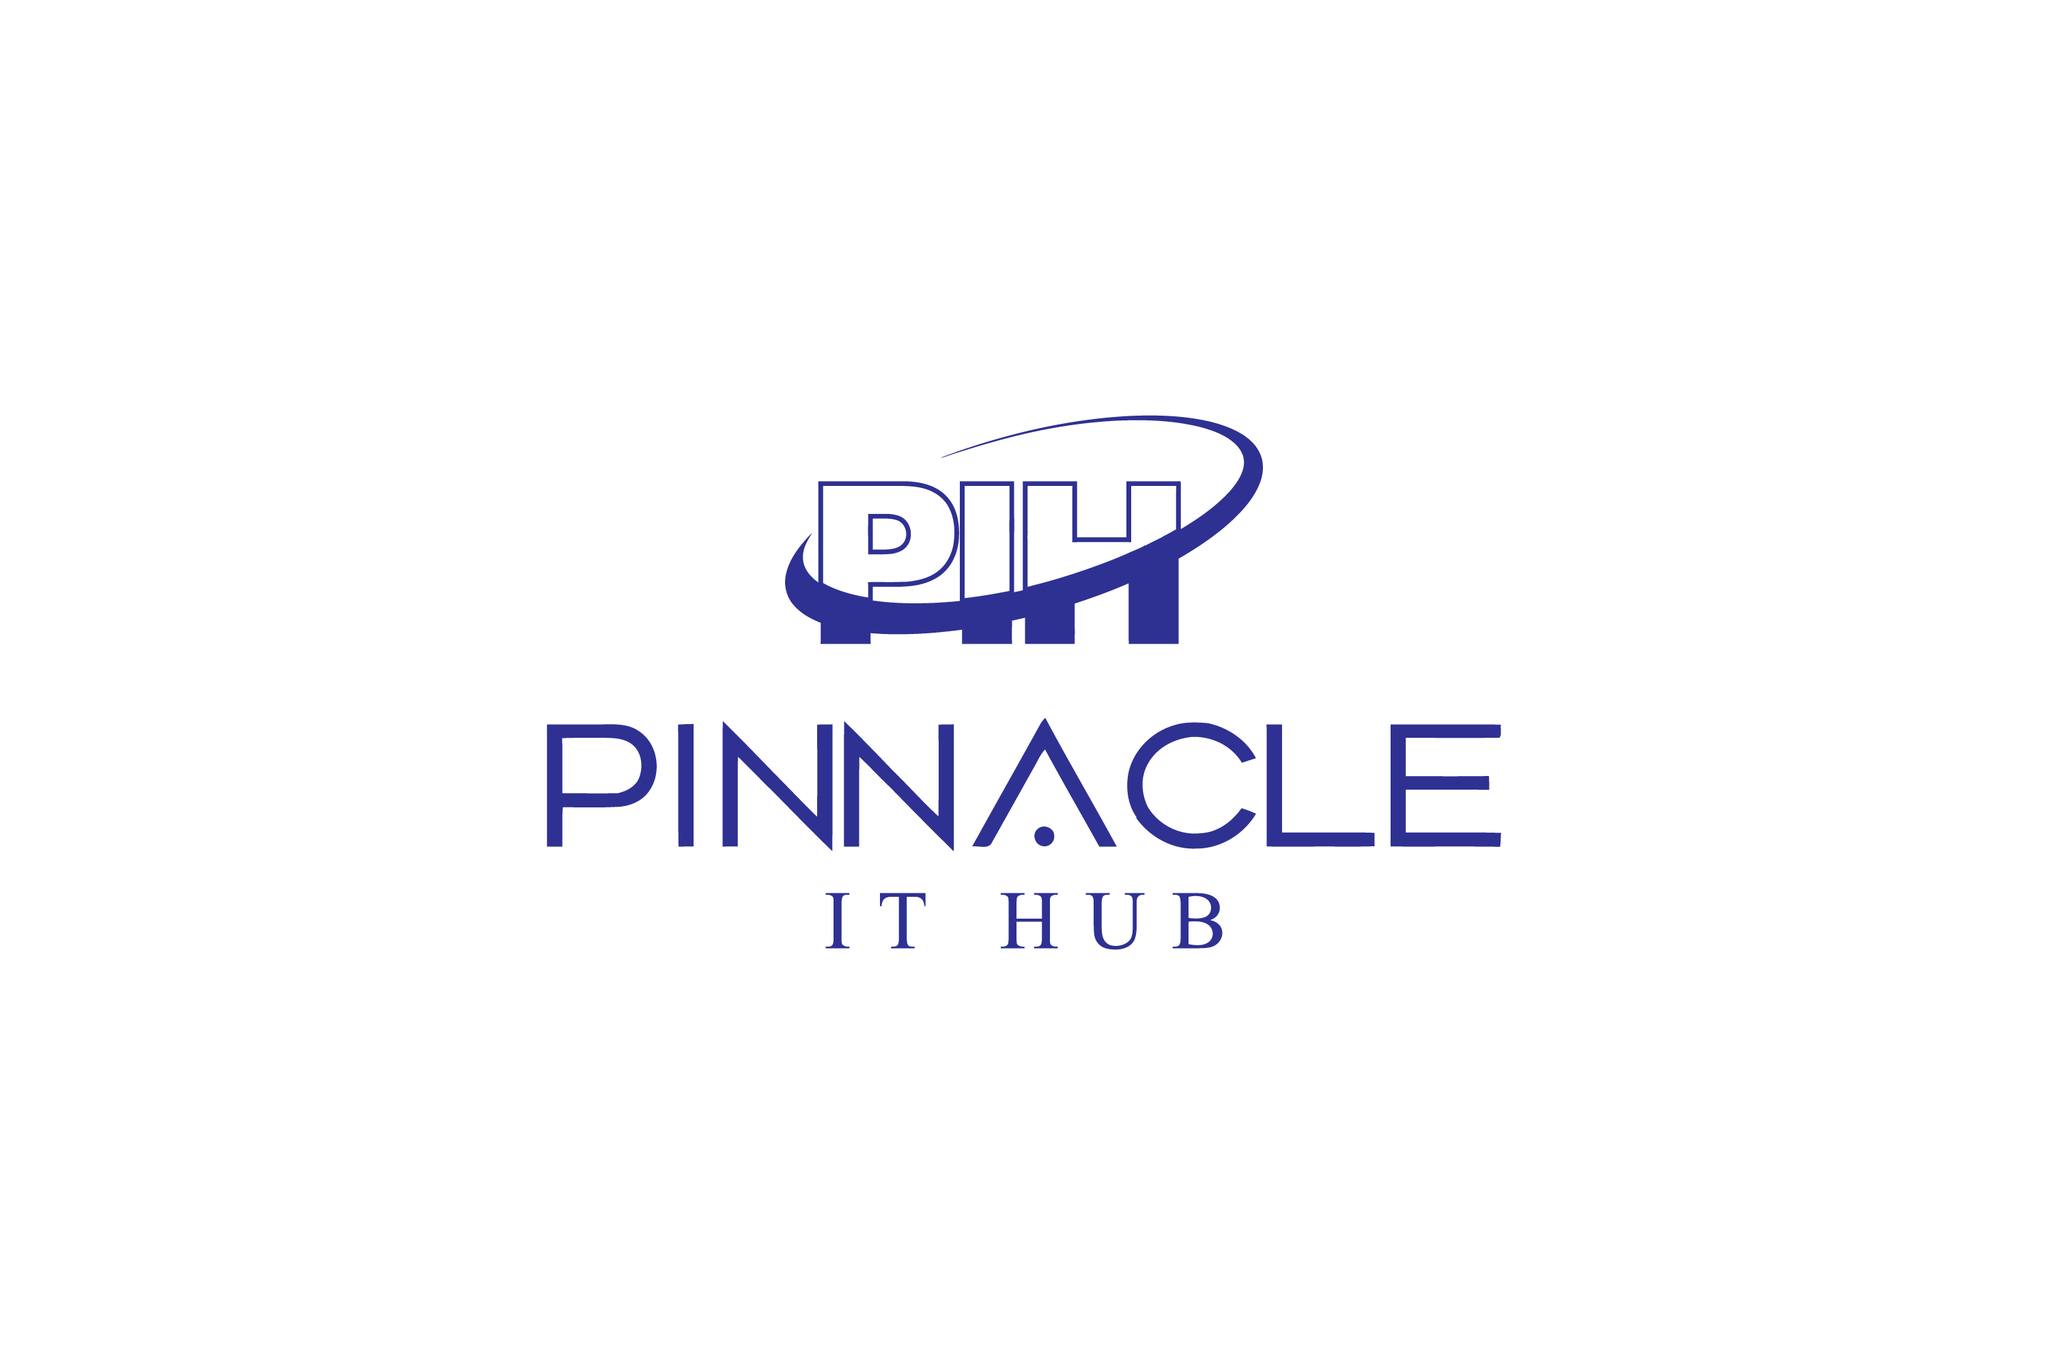 Pinnacleithub